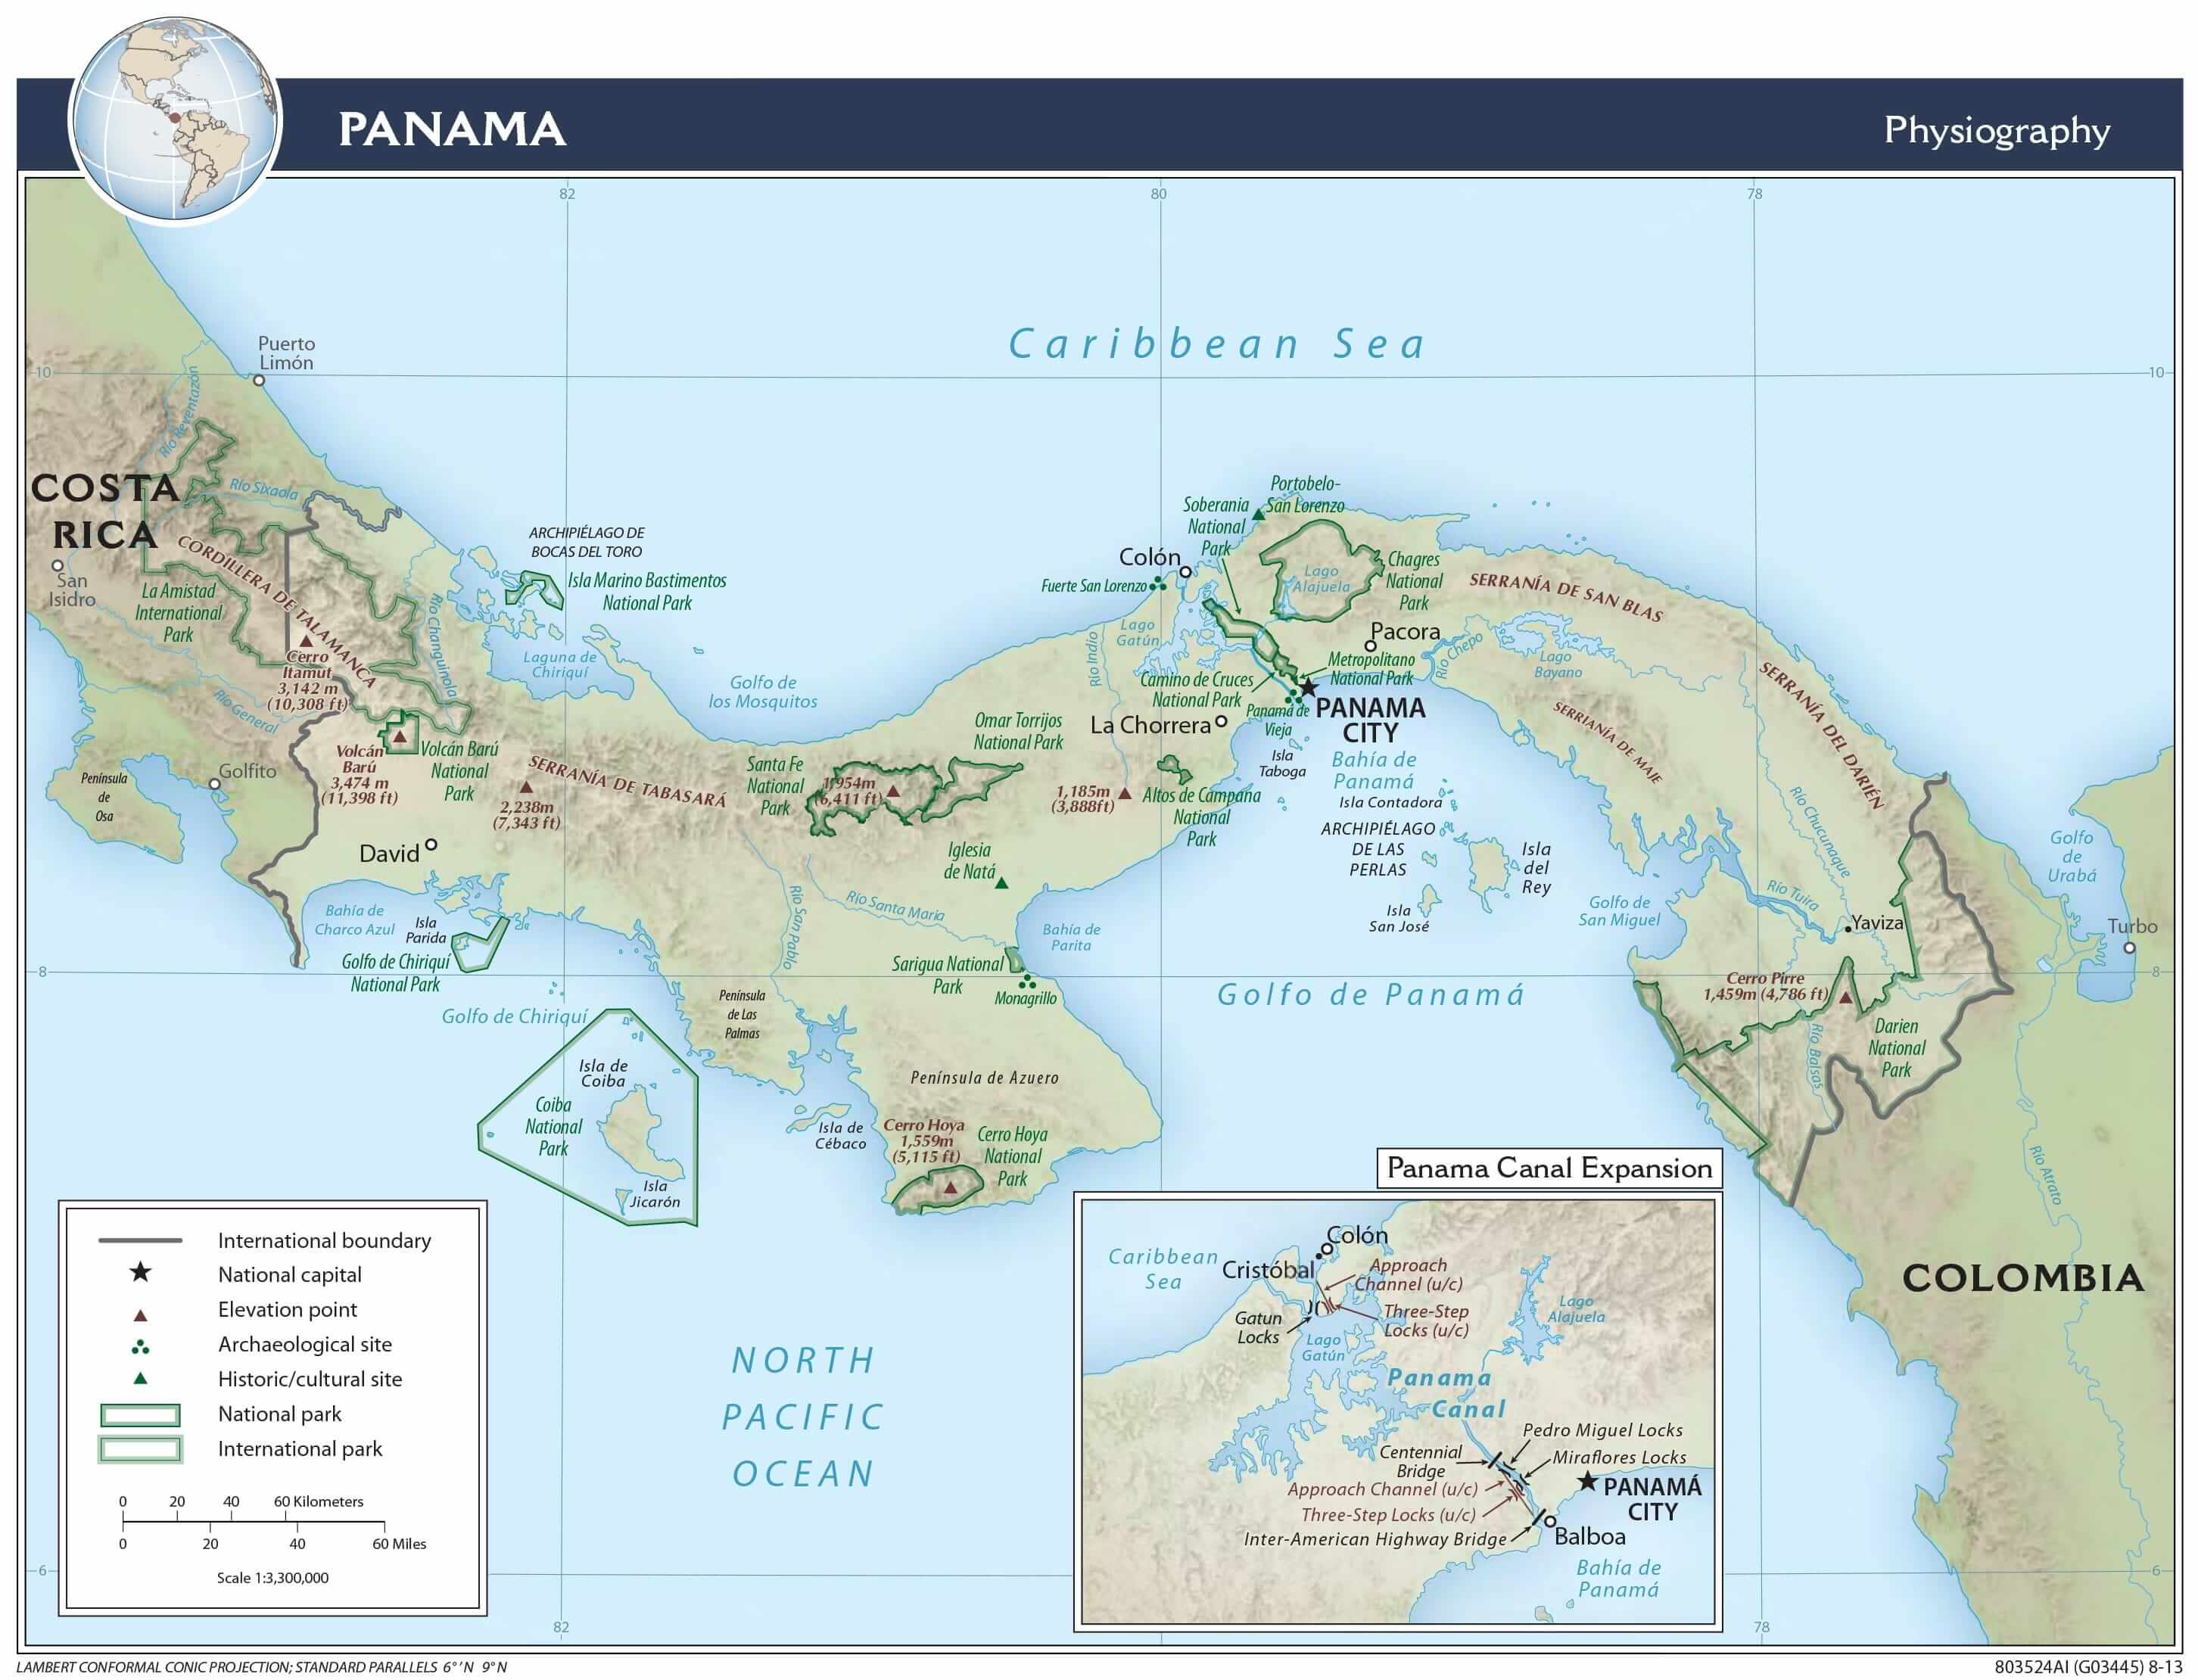 Panama physiographic map